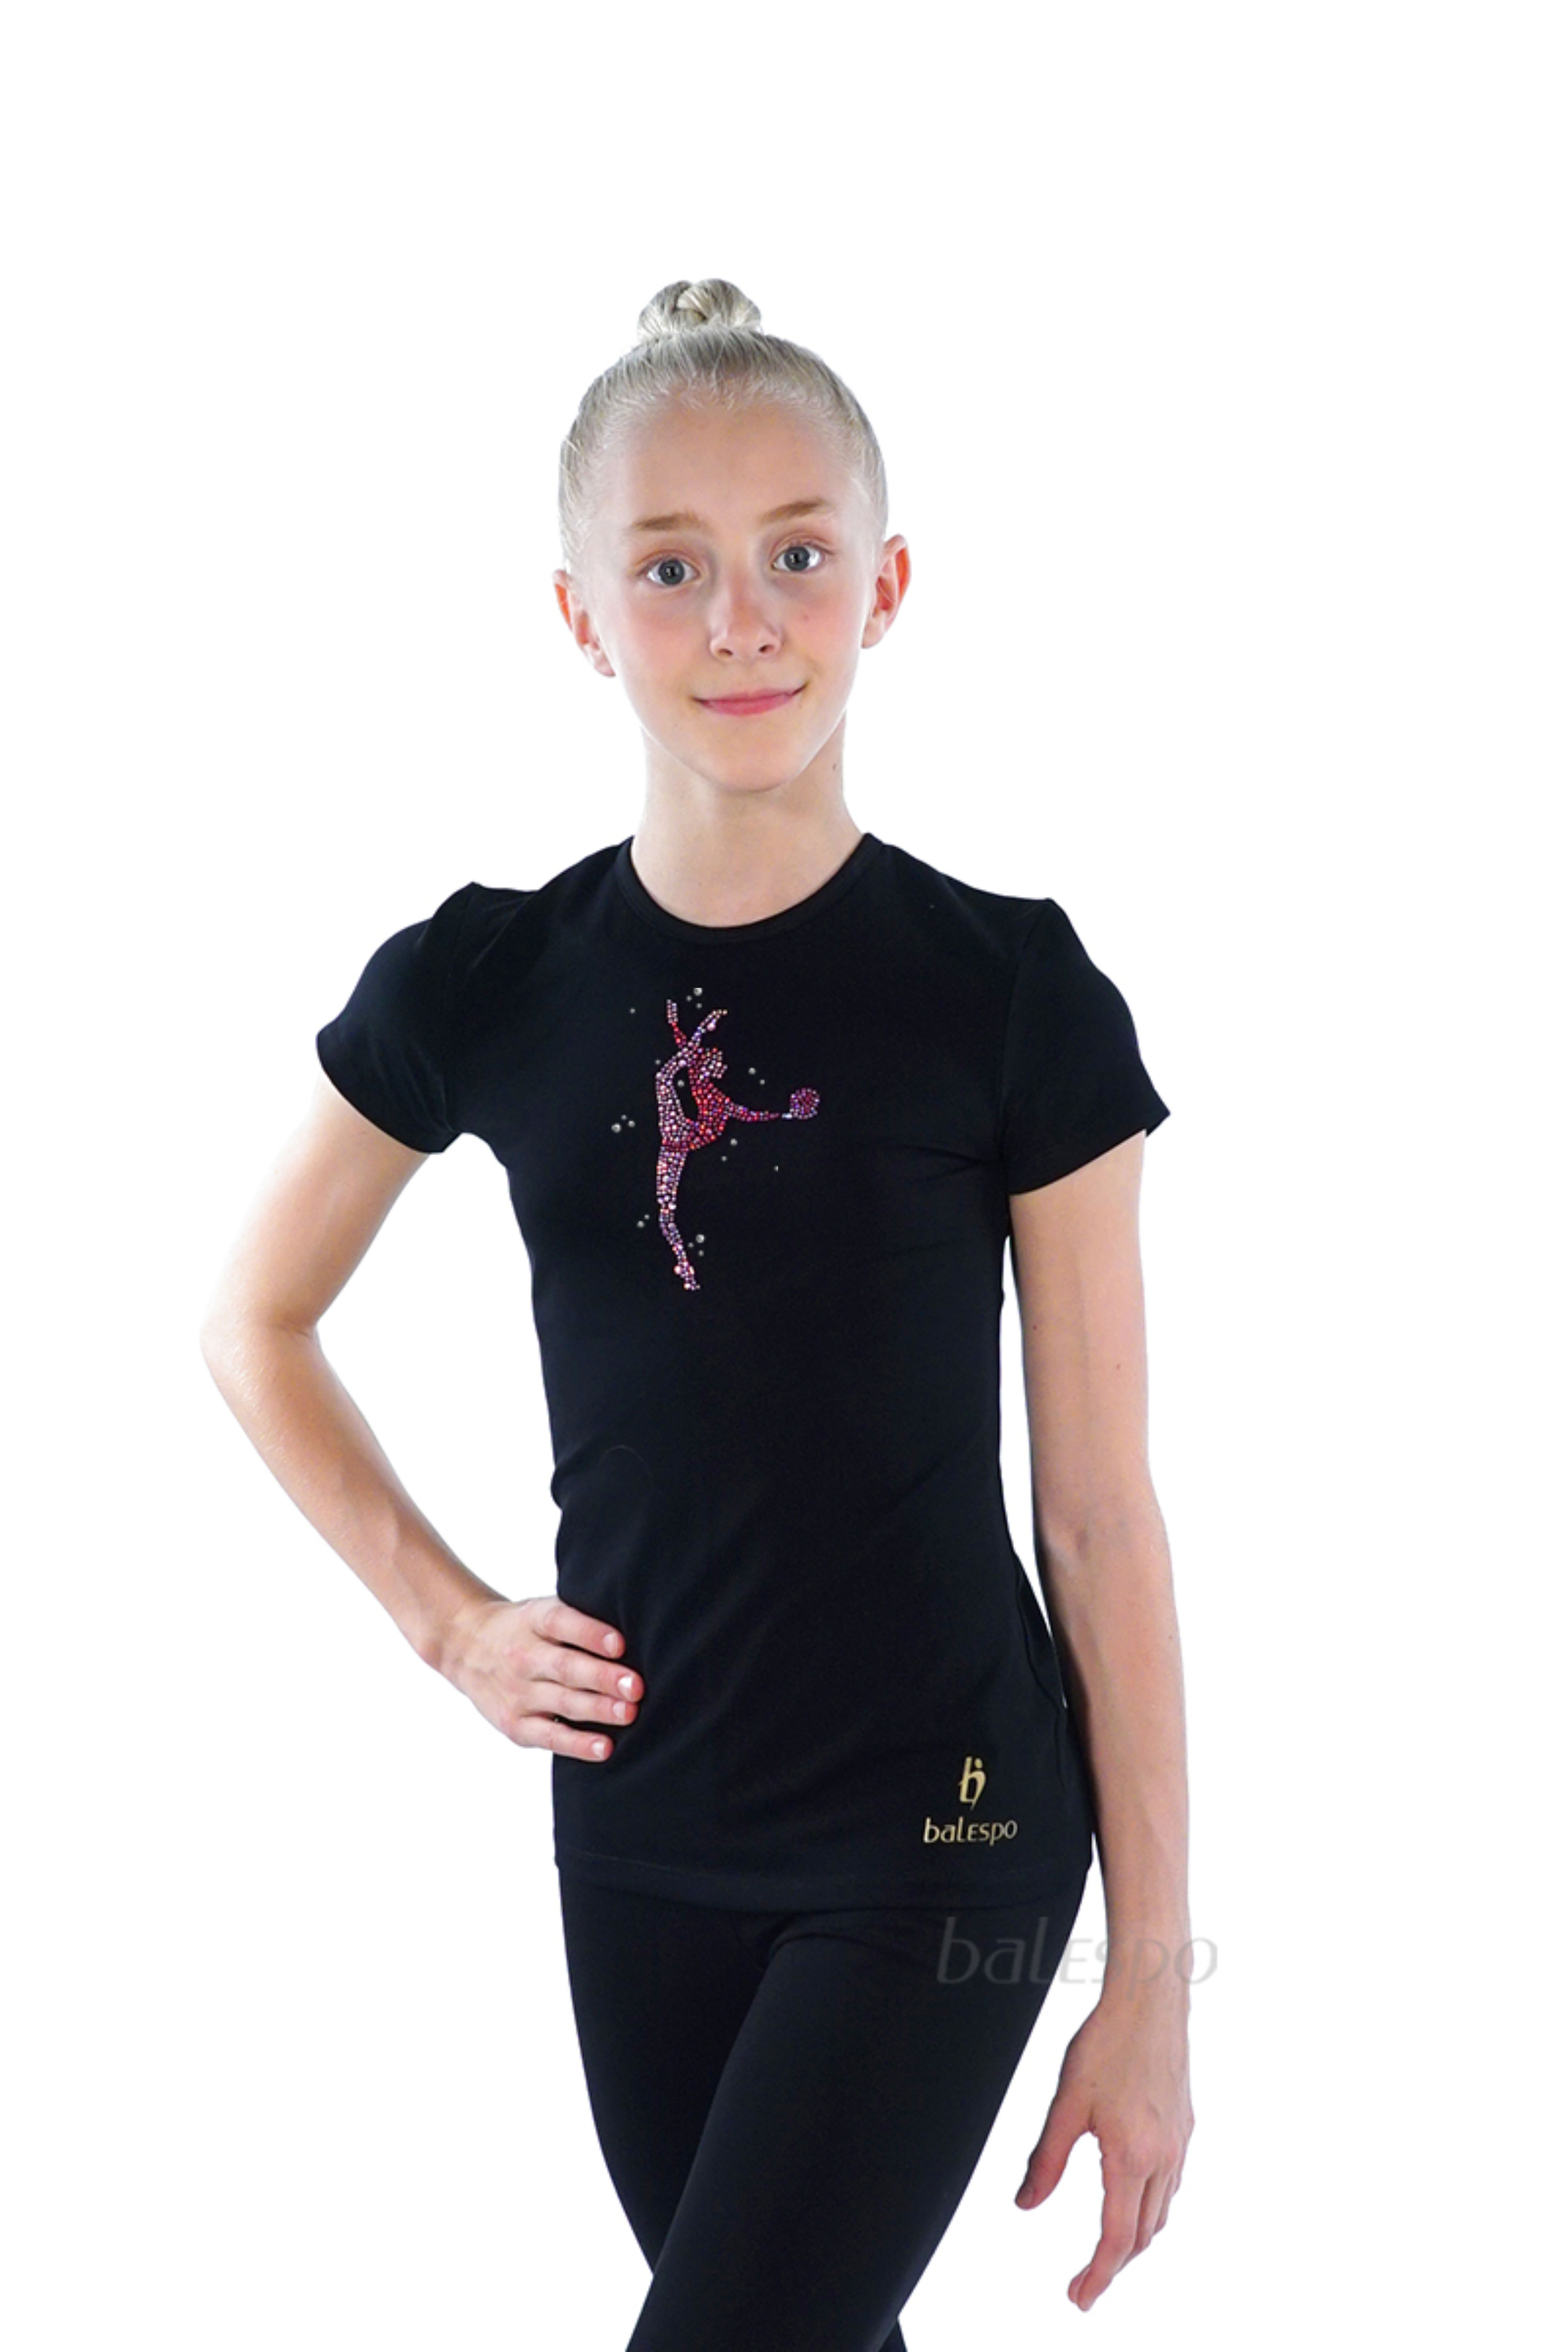 Gymnastické tričko s krátkymi rukávmi BALESPO BC210.2-100 čierne s ružovými kamienkami "Gymnastka s loptou" veľ. 42 (158)